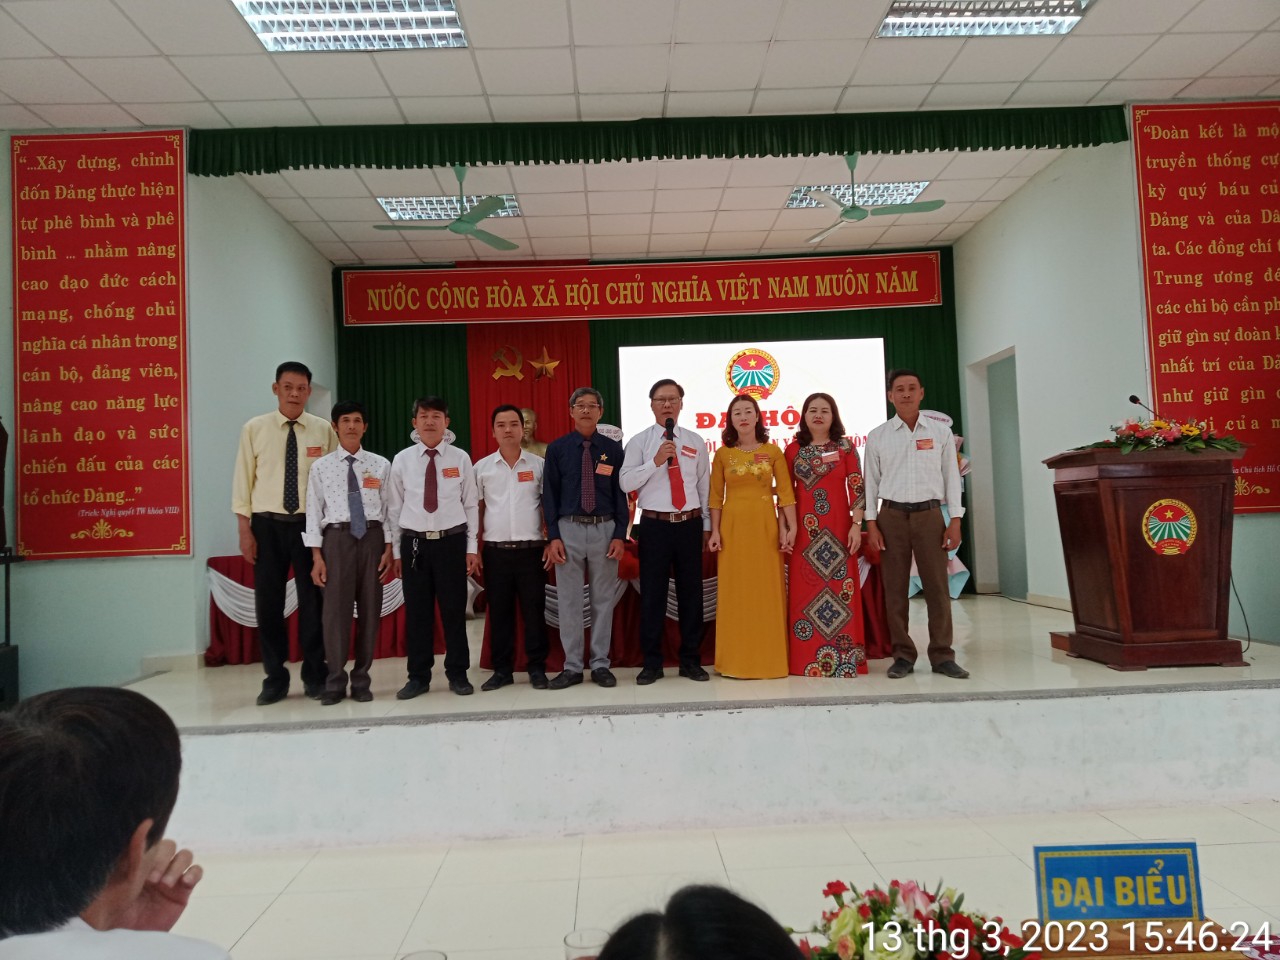 Đồng chí Nguyễn Cửu Tuấn-Chủ tịch Hội Nông dân xã nhiệm kỳ 2023-2028 cùng các thành viên Ban Chấp hành ra mắt, phát biểu nhận nhiệm vụ